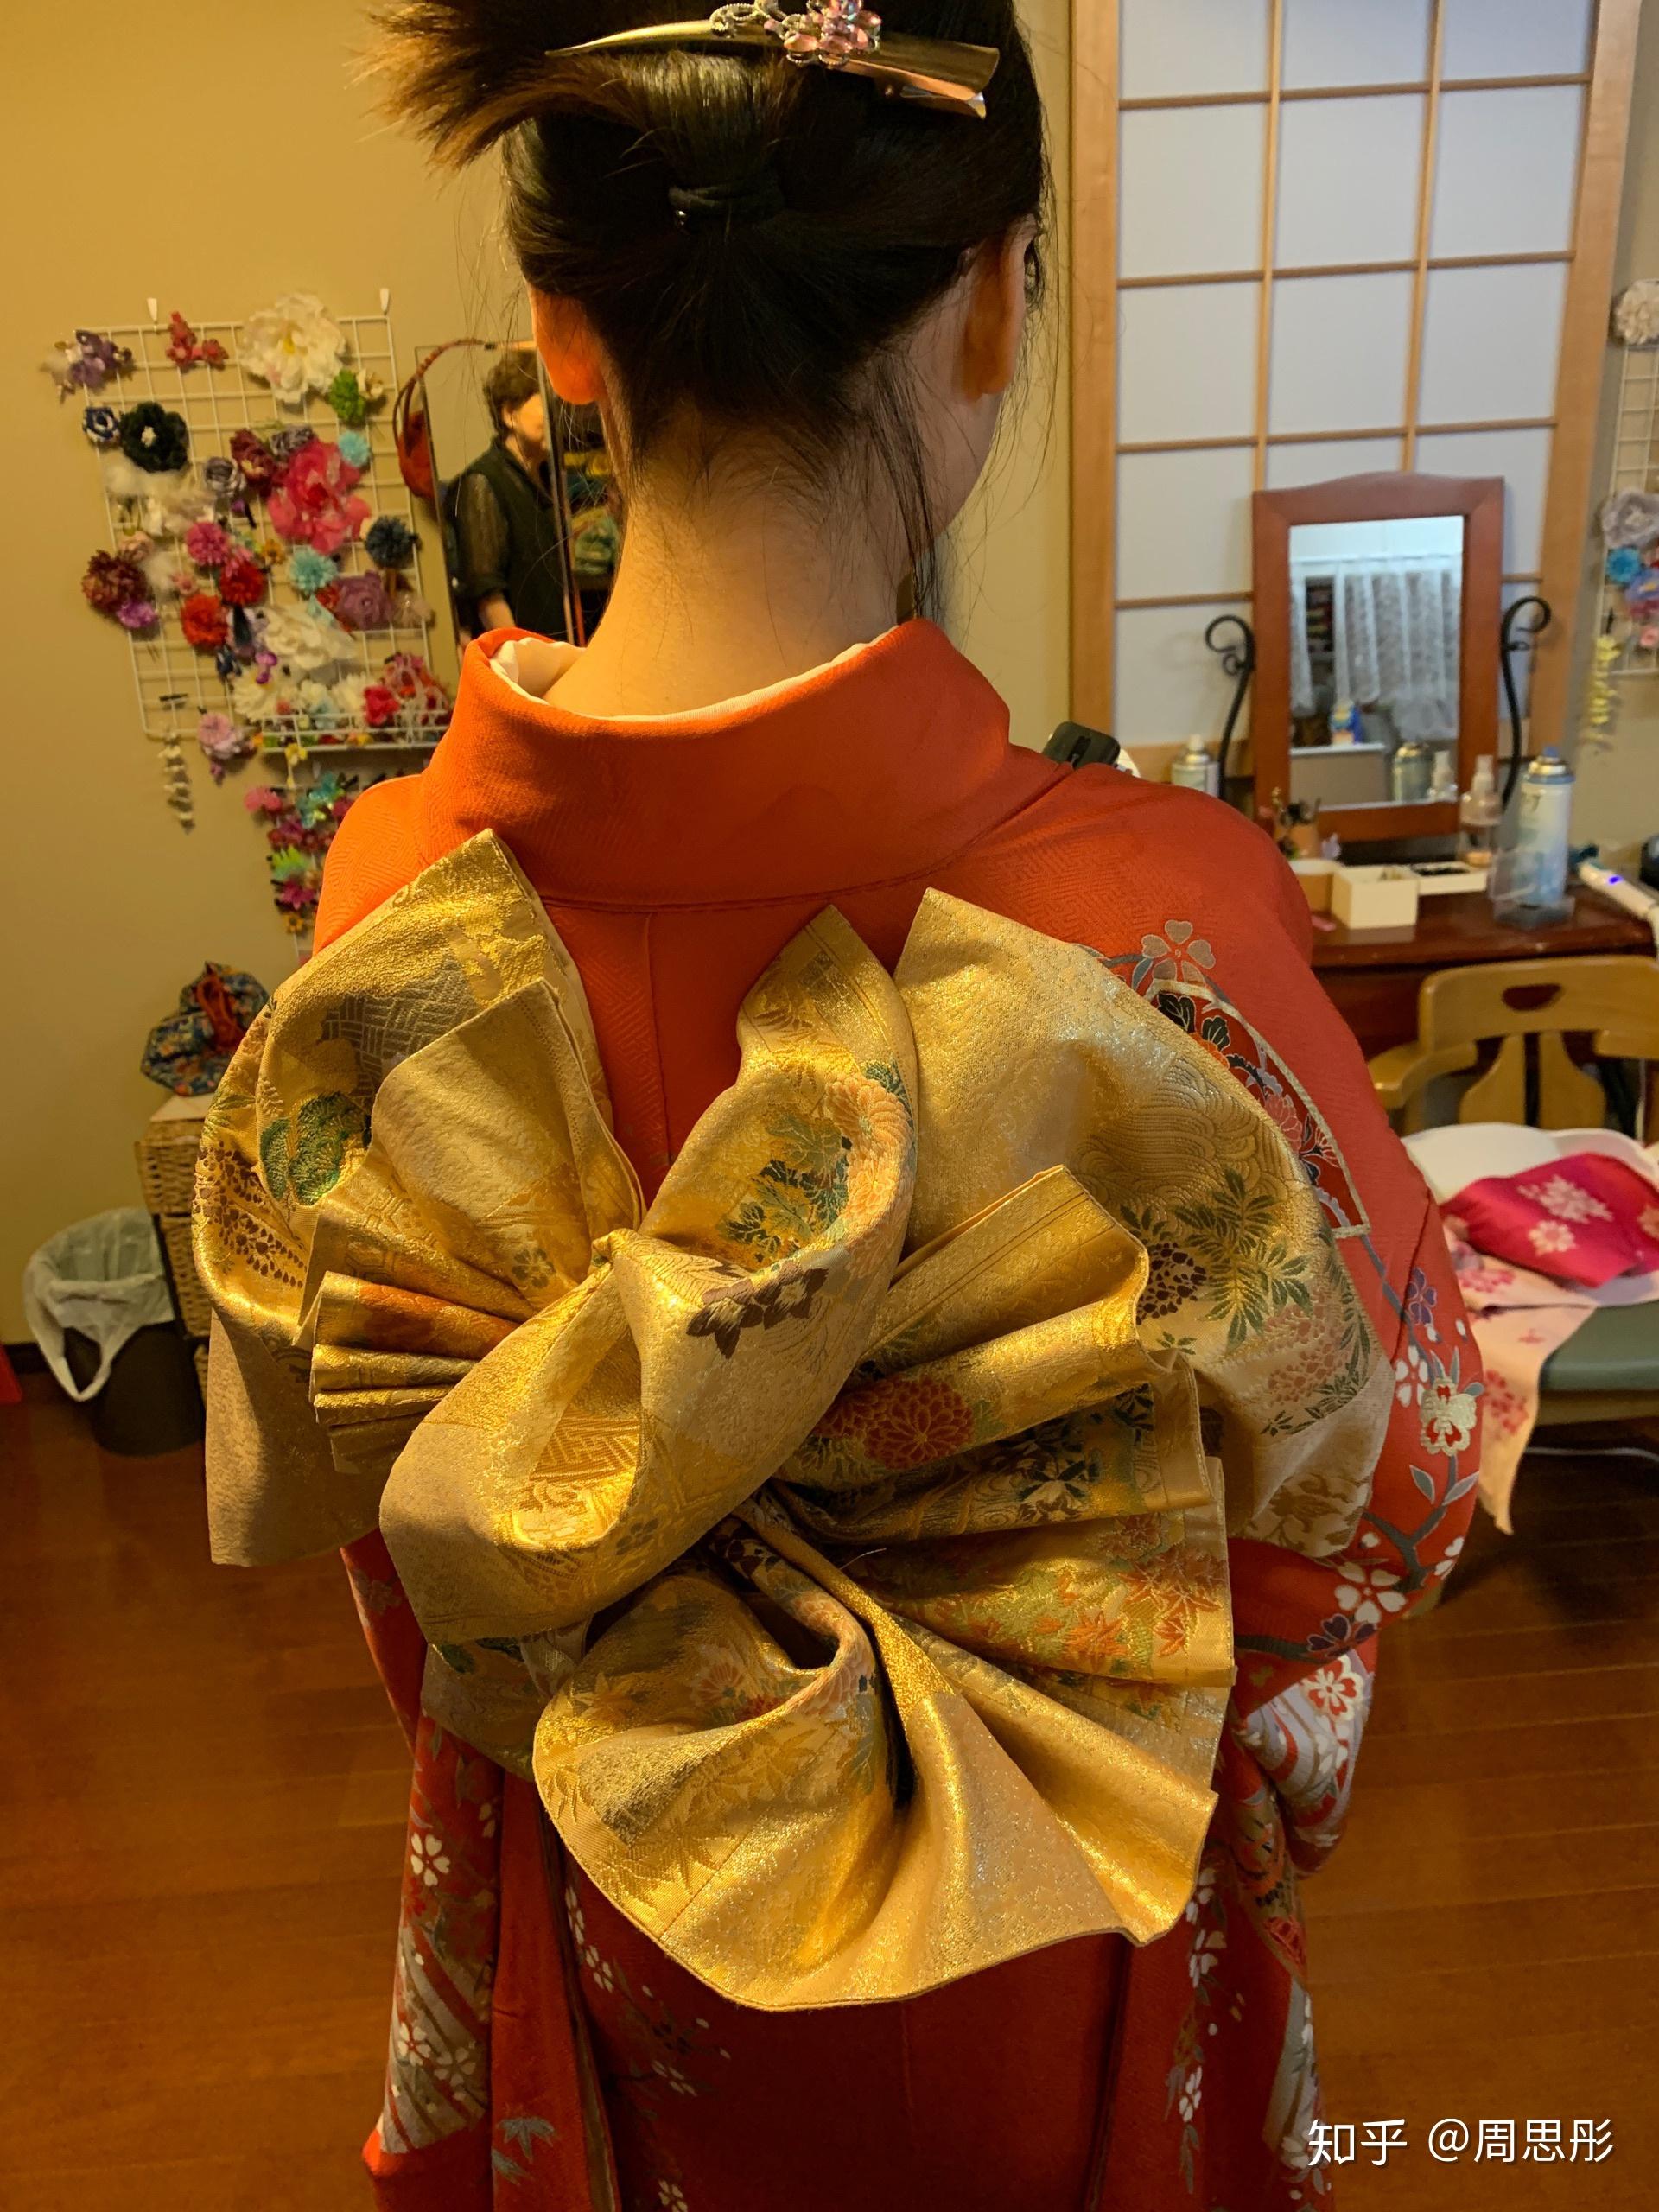 日本女性和服背后腰部的类似小枕头的东西是干嘛的